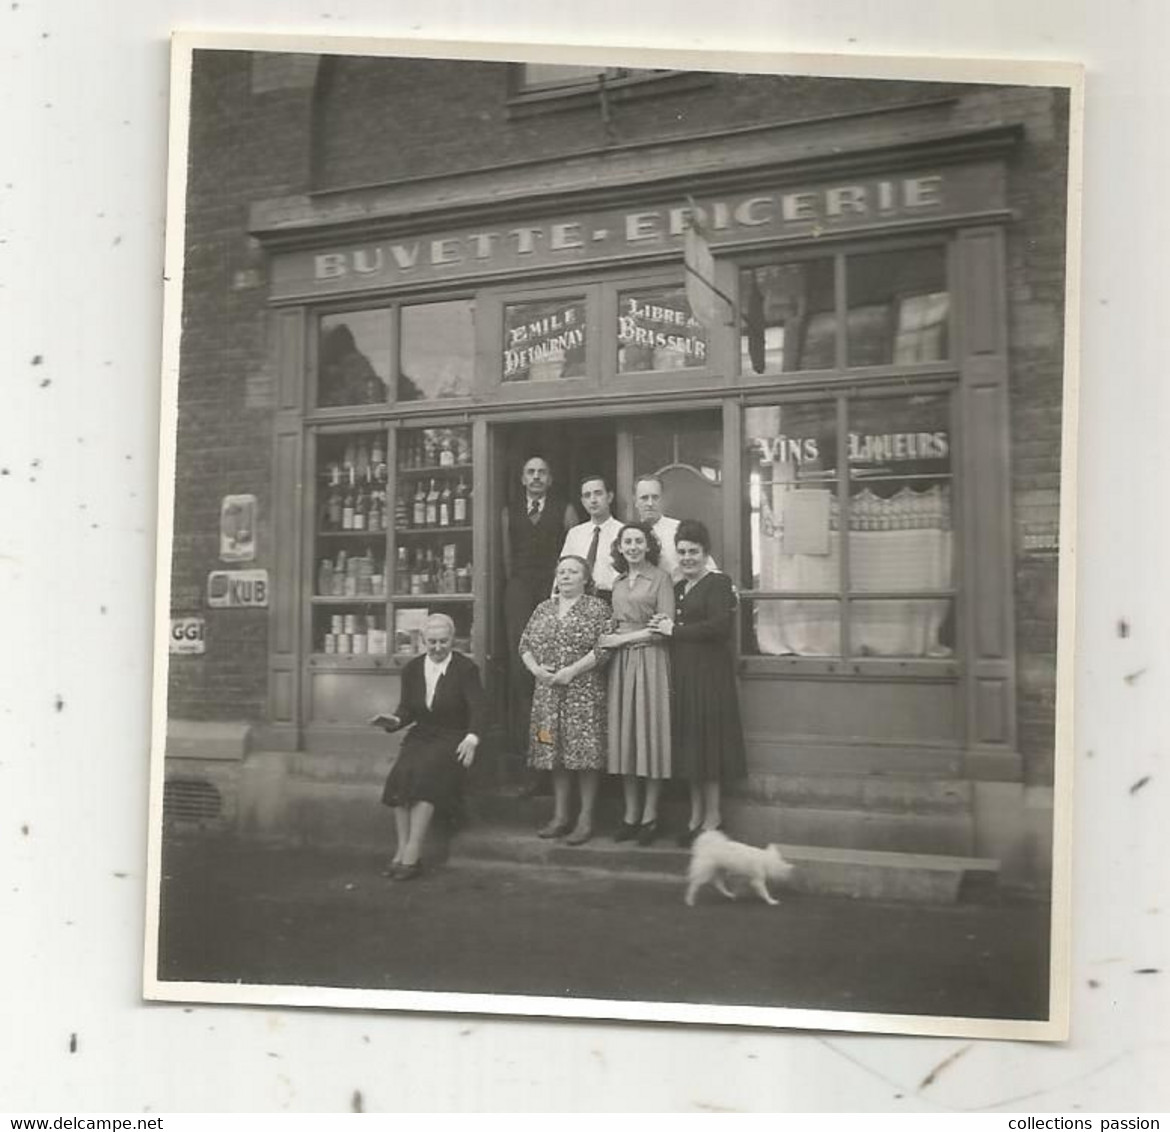 Photographie, Métier , Commerce , BUVETTE - EPICERIE , Publicuté Kub ,Valenciennes ,1948 , 90 X 90 Mm - Profesiones